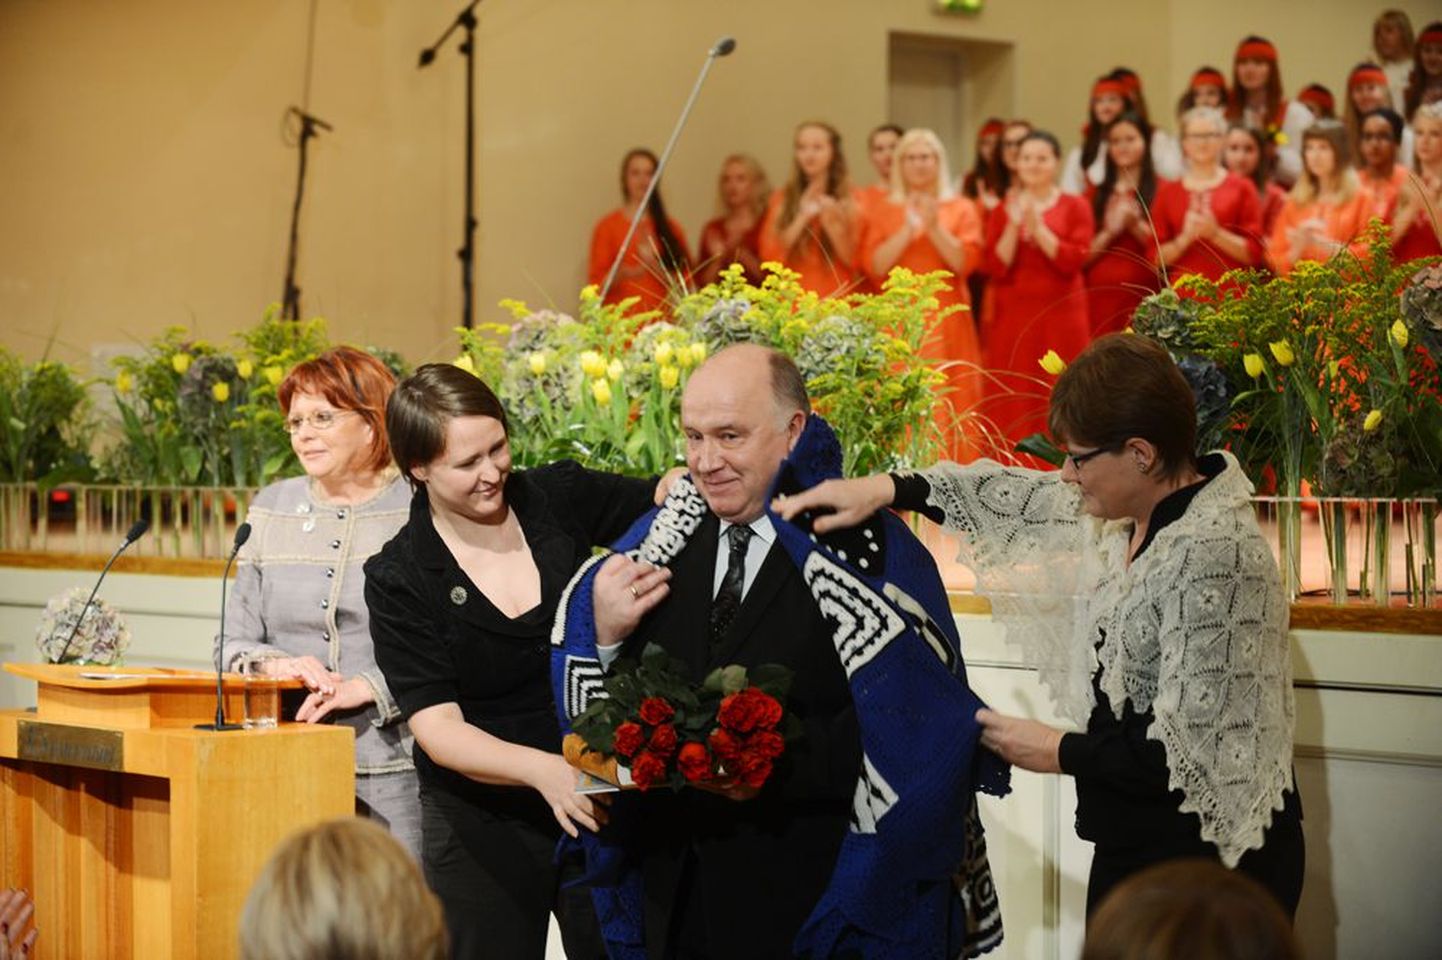 Naisliidu korraldatud kontsertaktusel Estonia kontserdisaalis kuulutati aasta isaks Ralf Allikvee ja tema õlgadele asetati rahvusvärvides lapitekk.